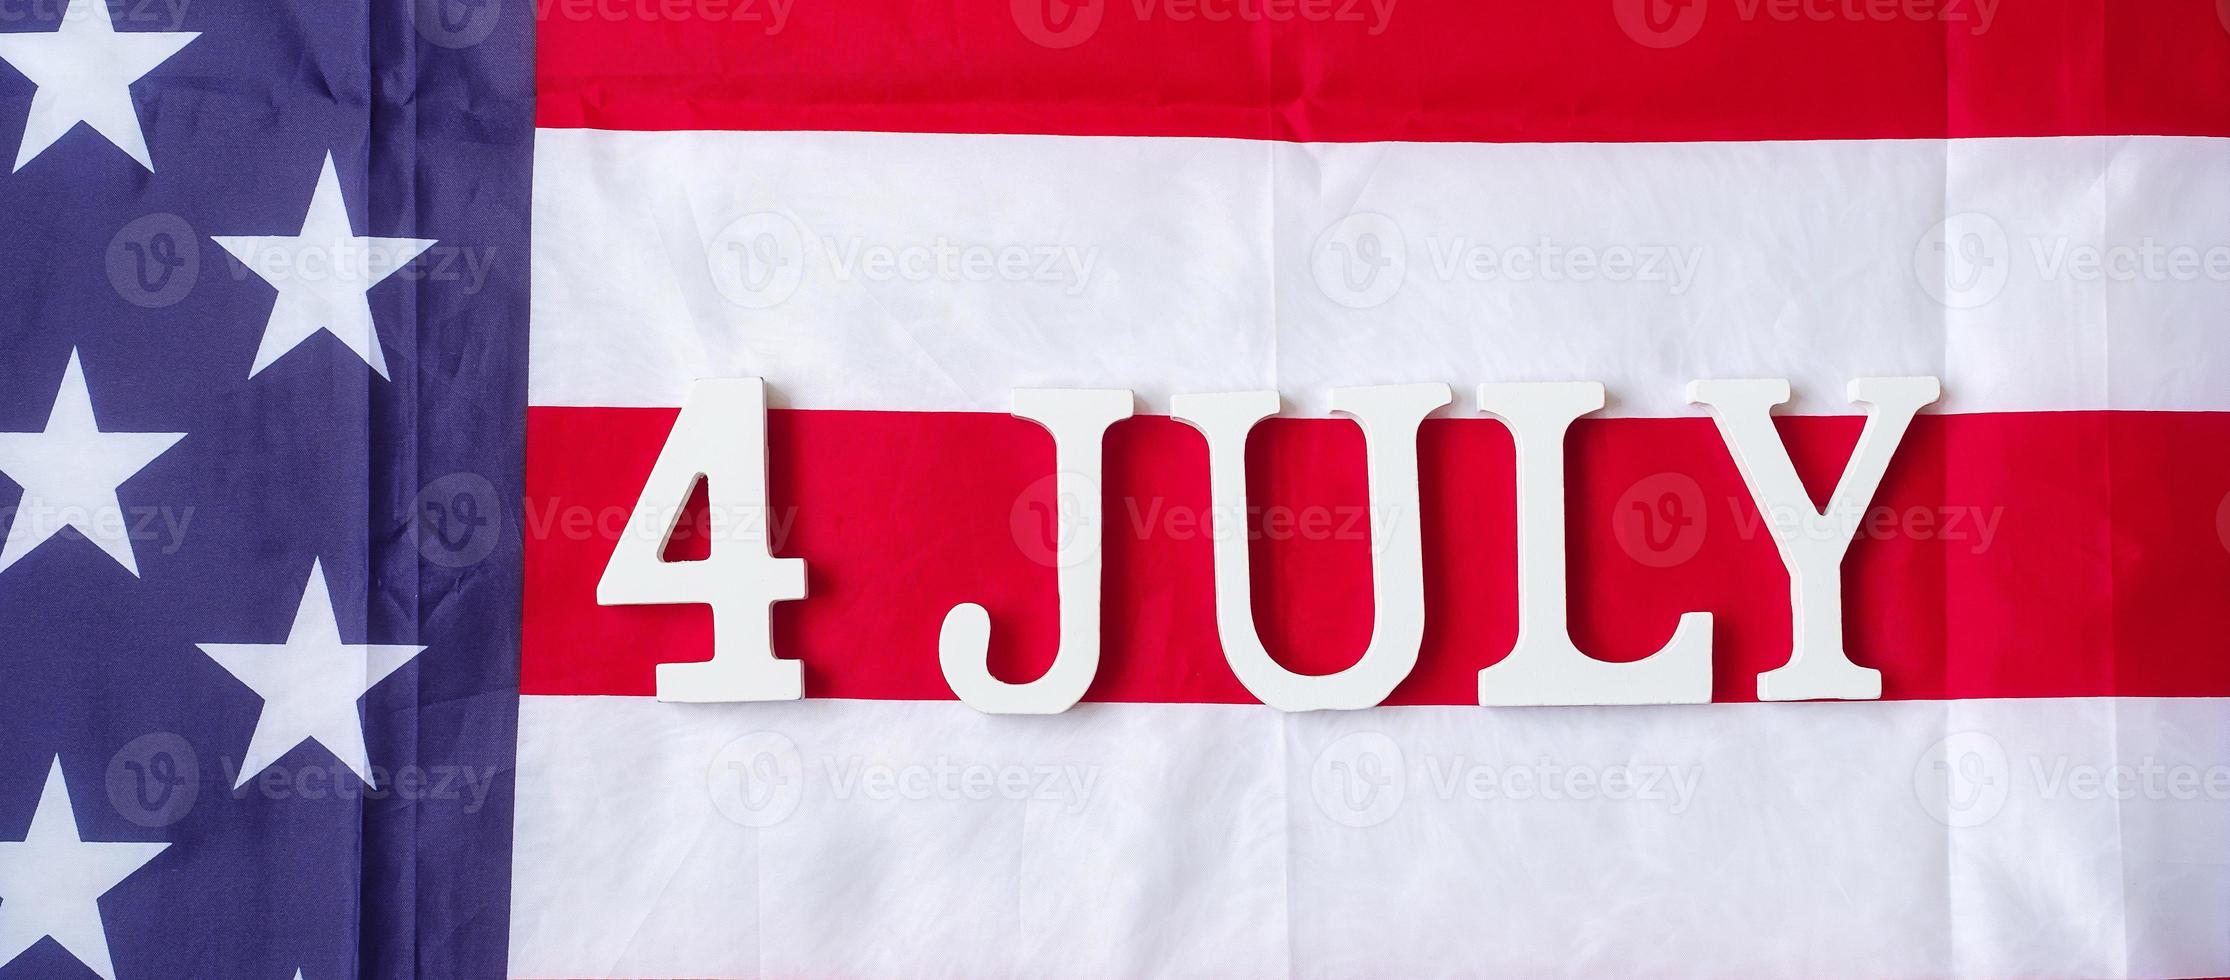 vierde van juli-tekst op de vlagachtergrond van de Verenigde Staten van Amerika. usa vakantie van onafhankelijkheid en vieringsconcepten foto